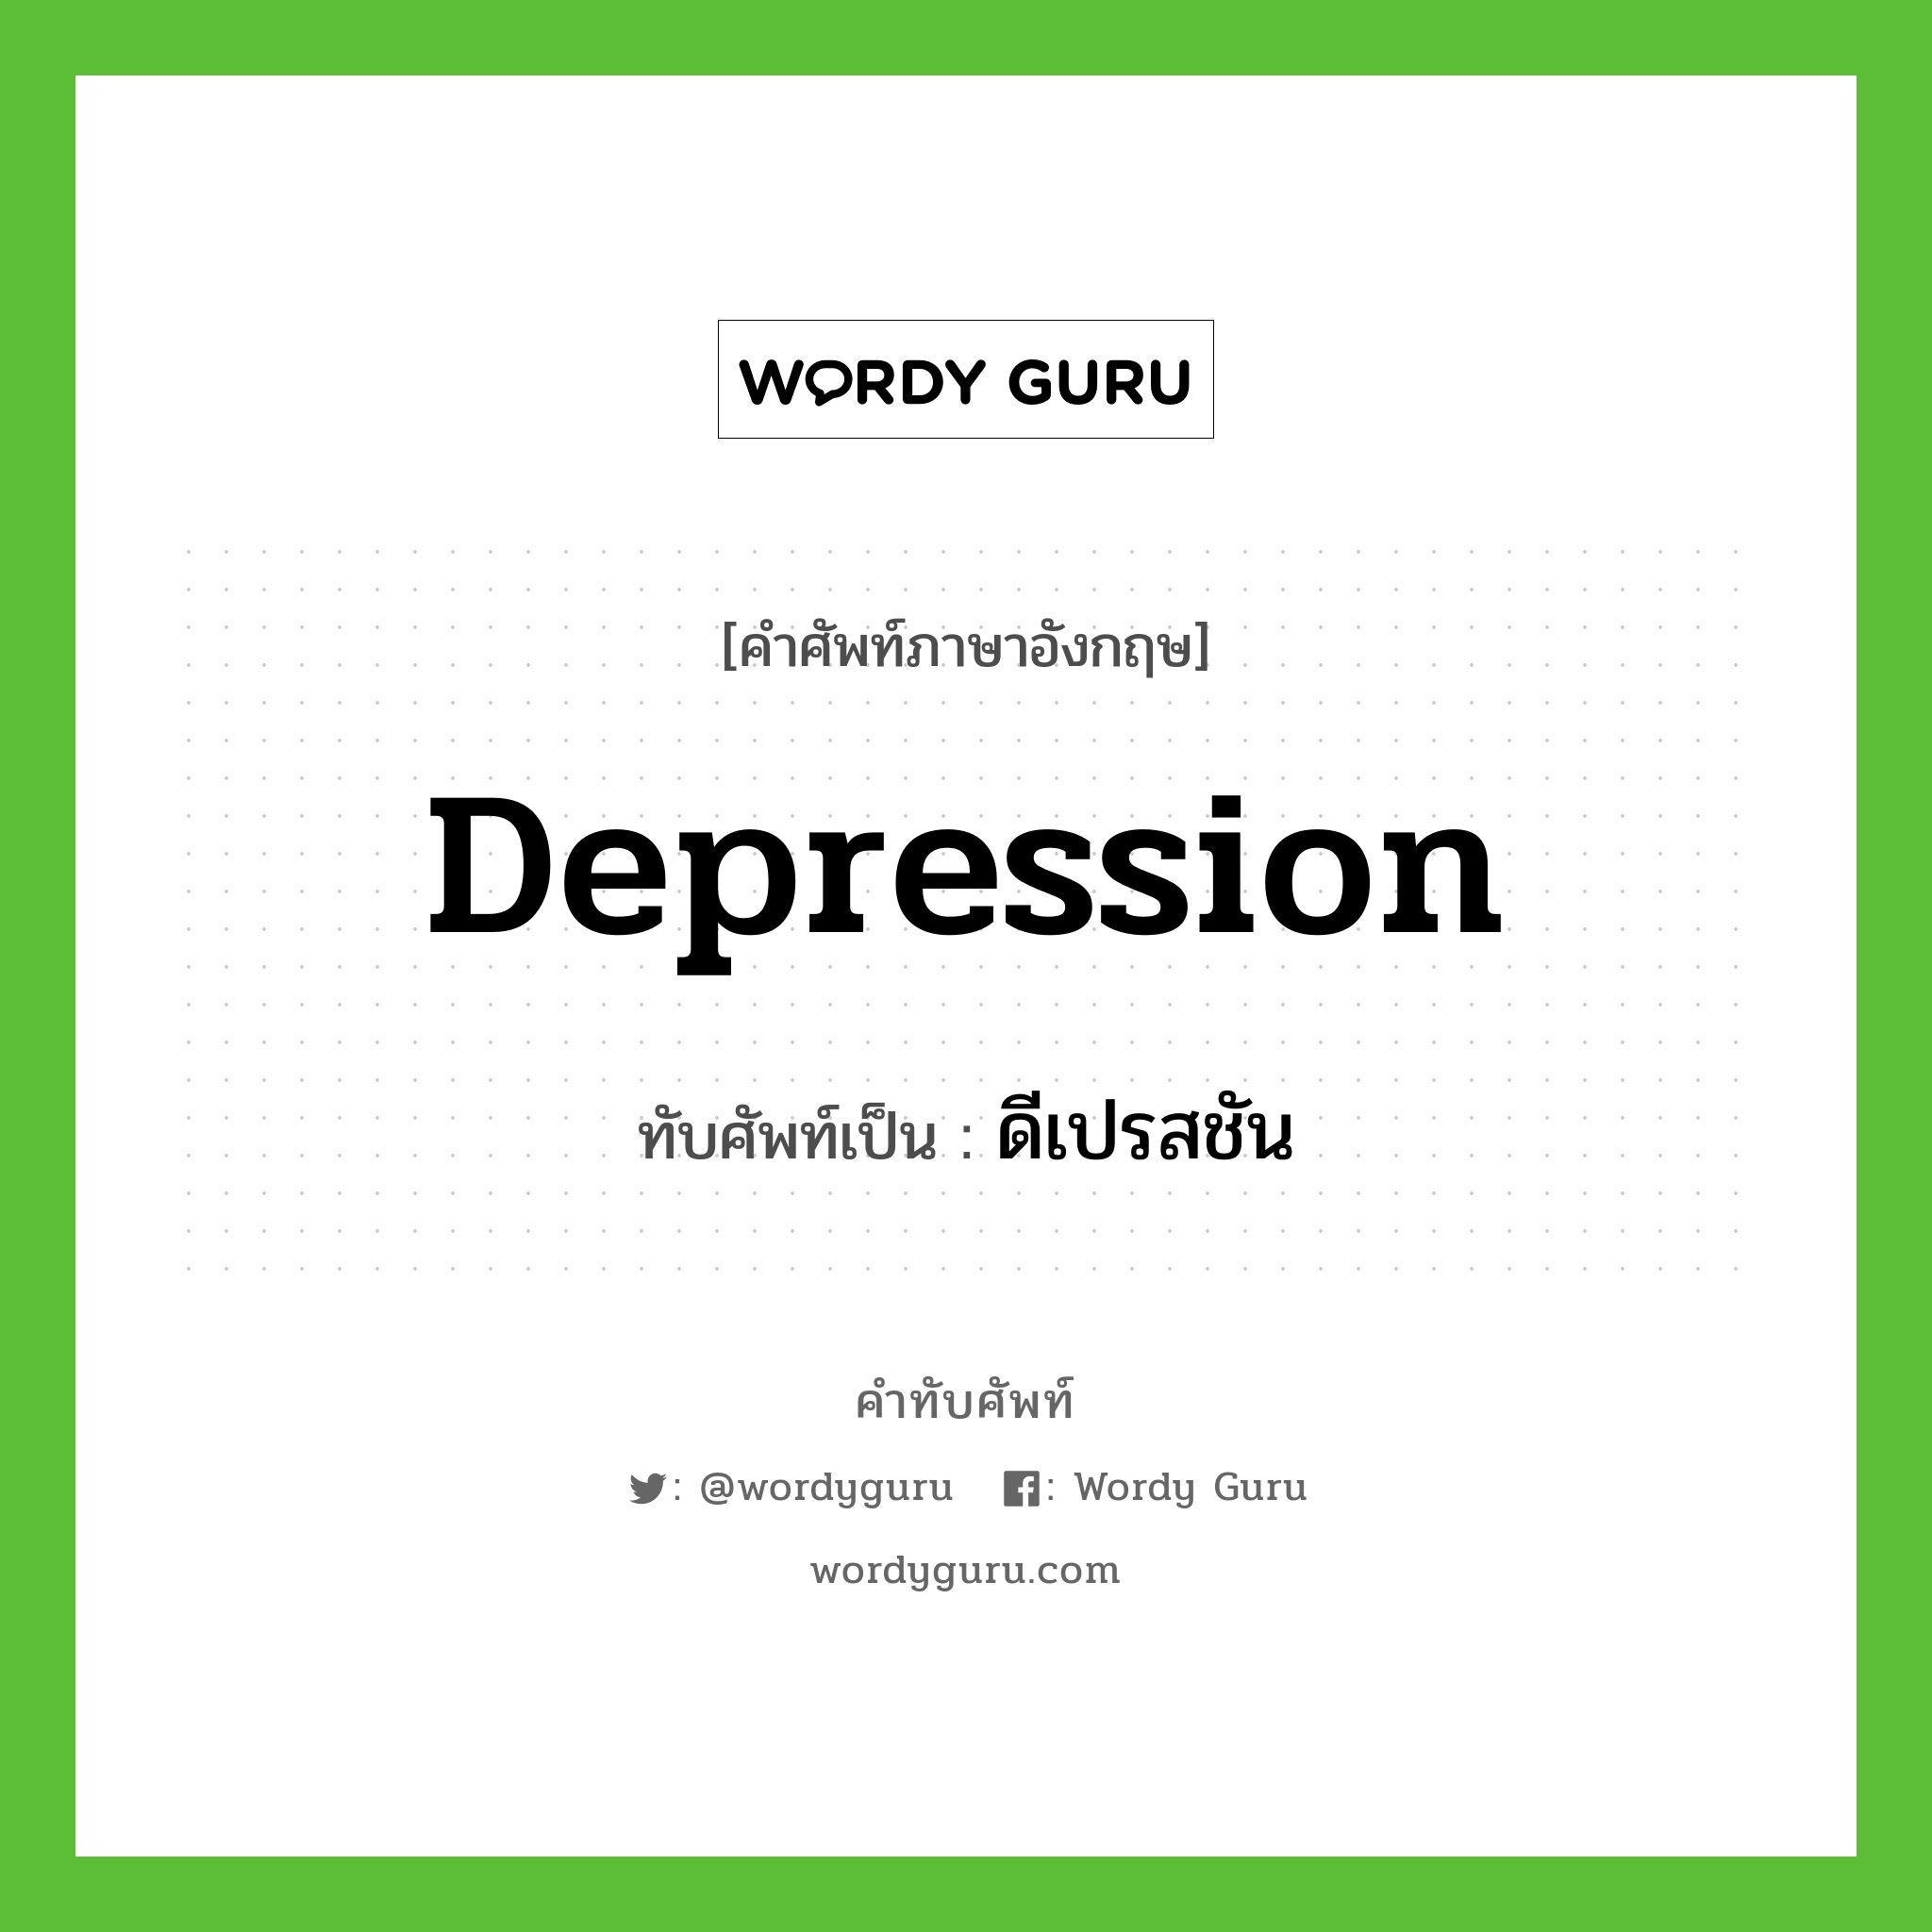 depression เขียนเป็นคำไทยว่าอะไร?, คำศัพท์ภาษาอังกฤษ depression ทับศัพท์เป็น ดีเปรสชัน